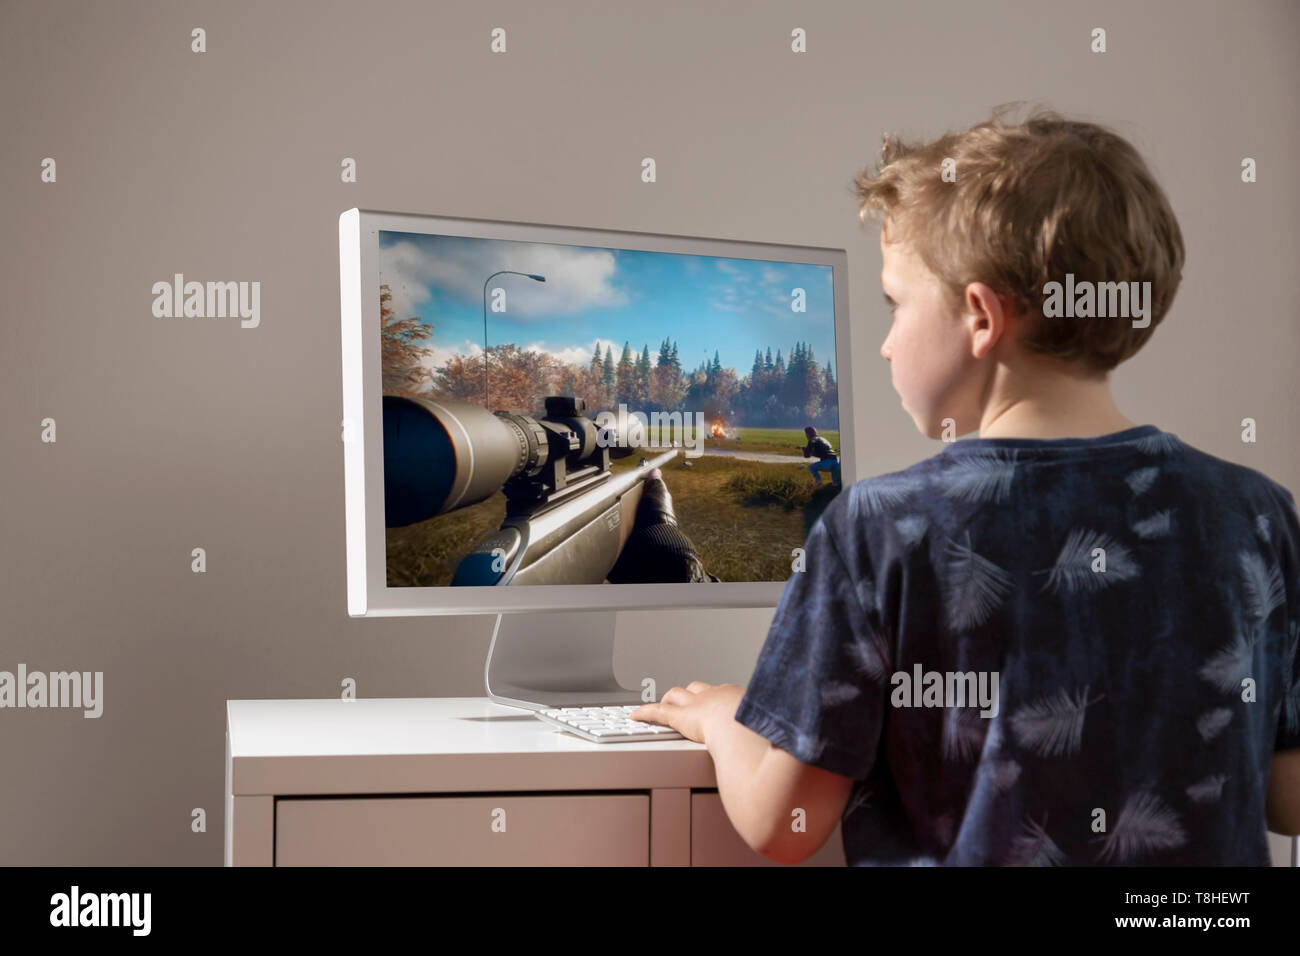 El muchacho, de 8 años, jugando a un shooter en primera persona en el ordenador Foto de stock